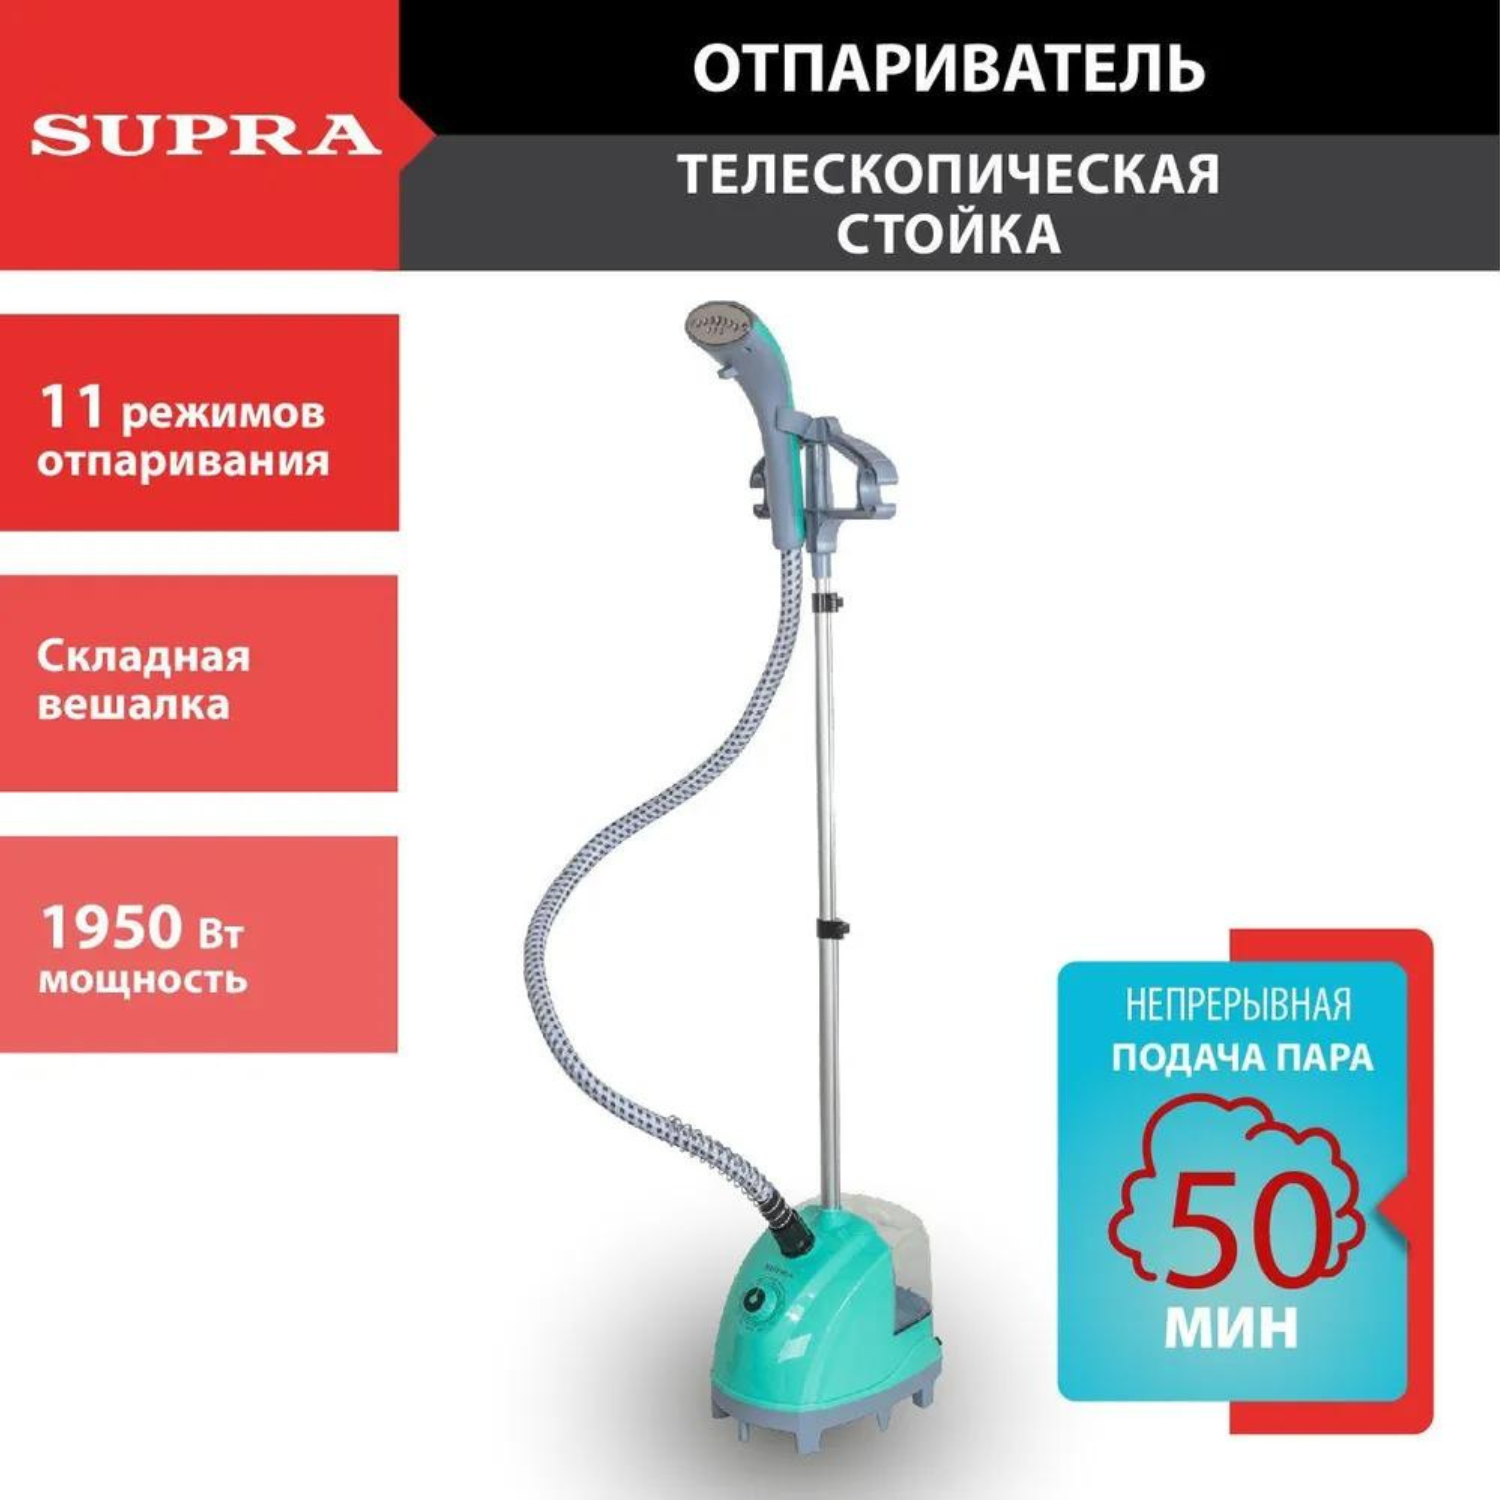 Вертикальный отпариватель Supra SBS-170 1.3 л голубой отпариватель supra sbs 155